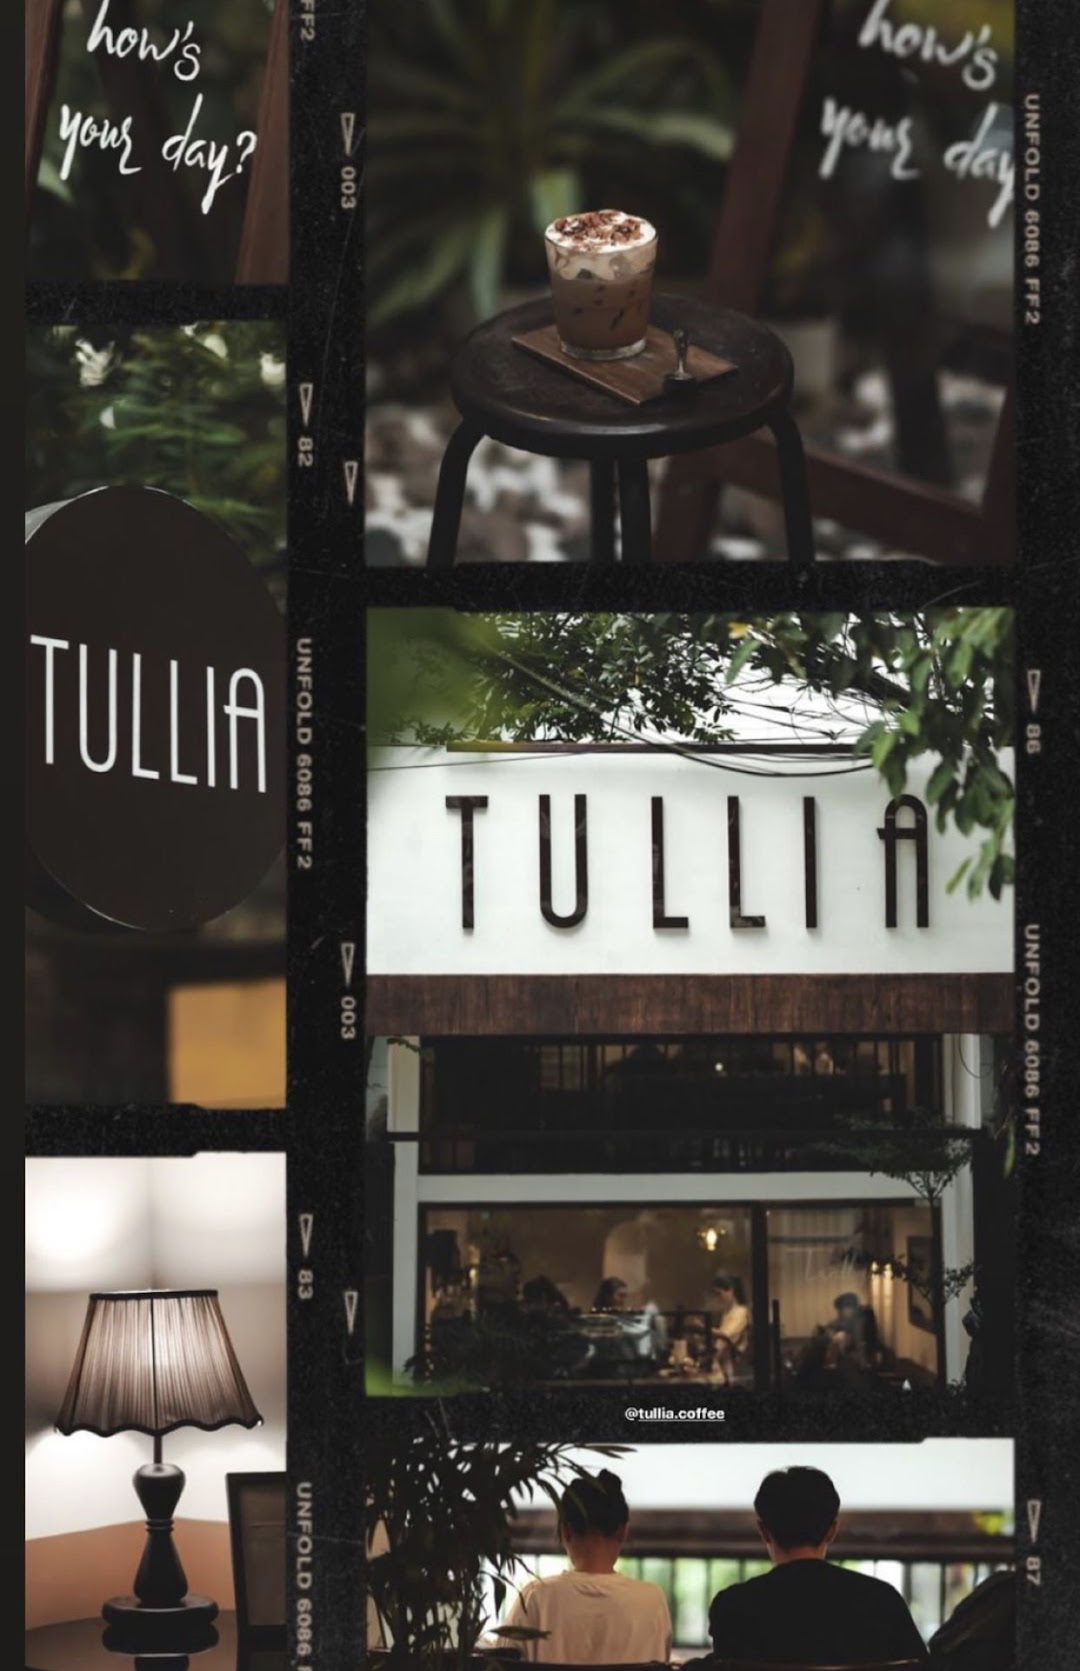 Tullia coffee